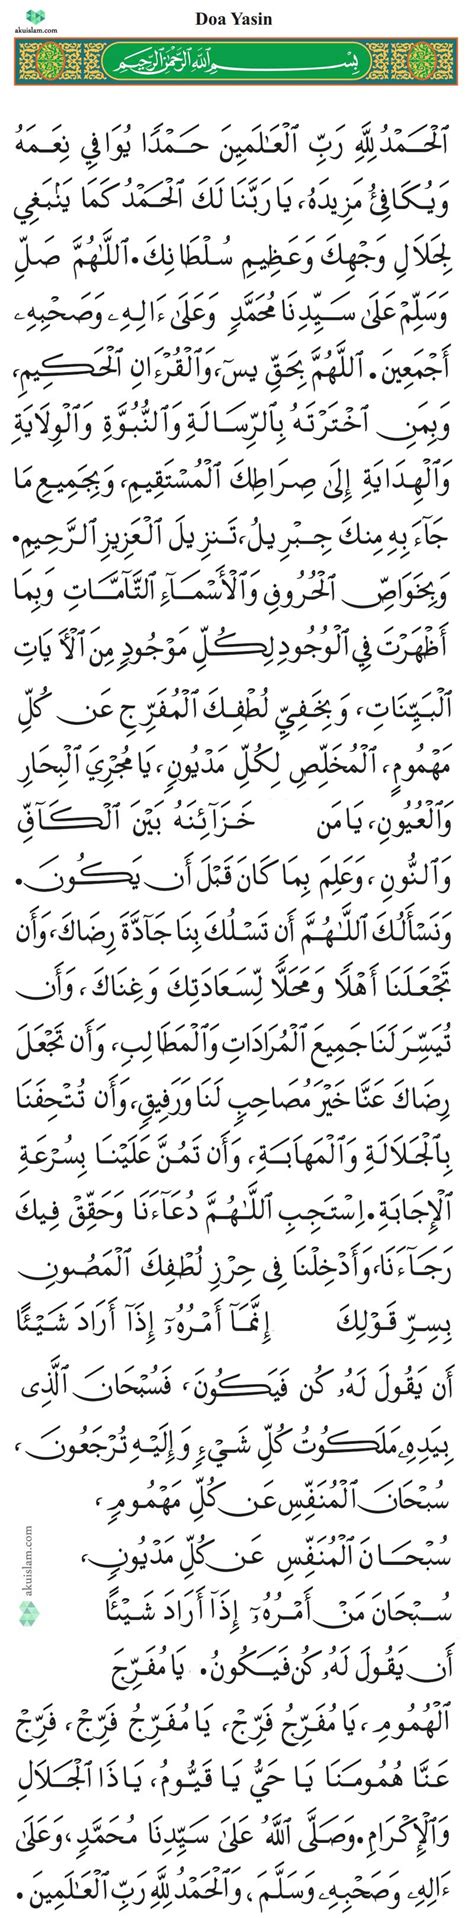 Doa Yasin Adab And Kelebihan Membaca Surah Yasin • Aku Islam